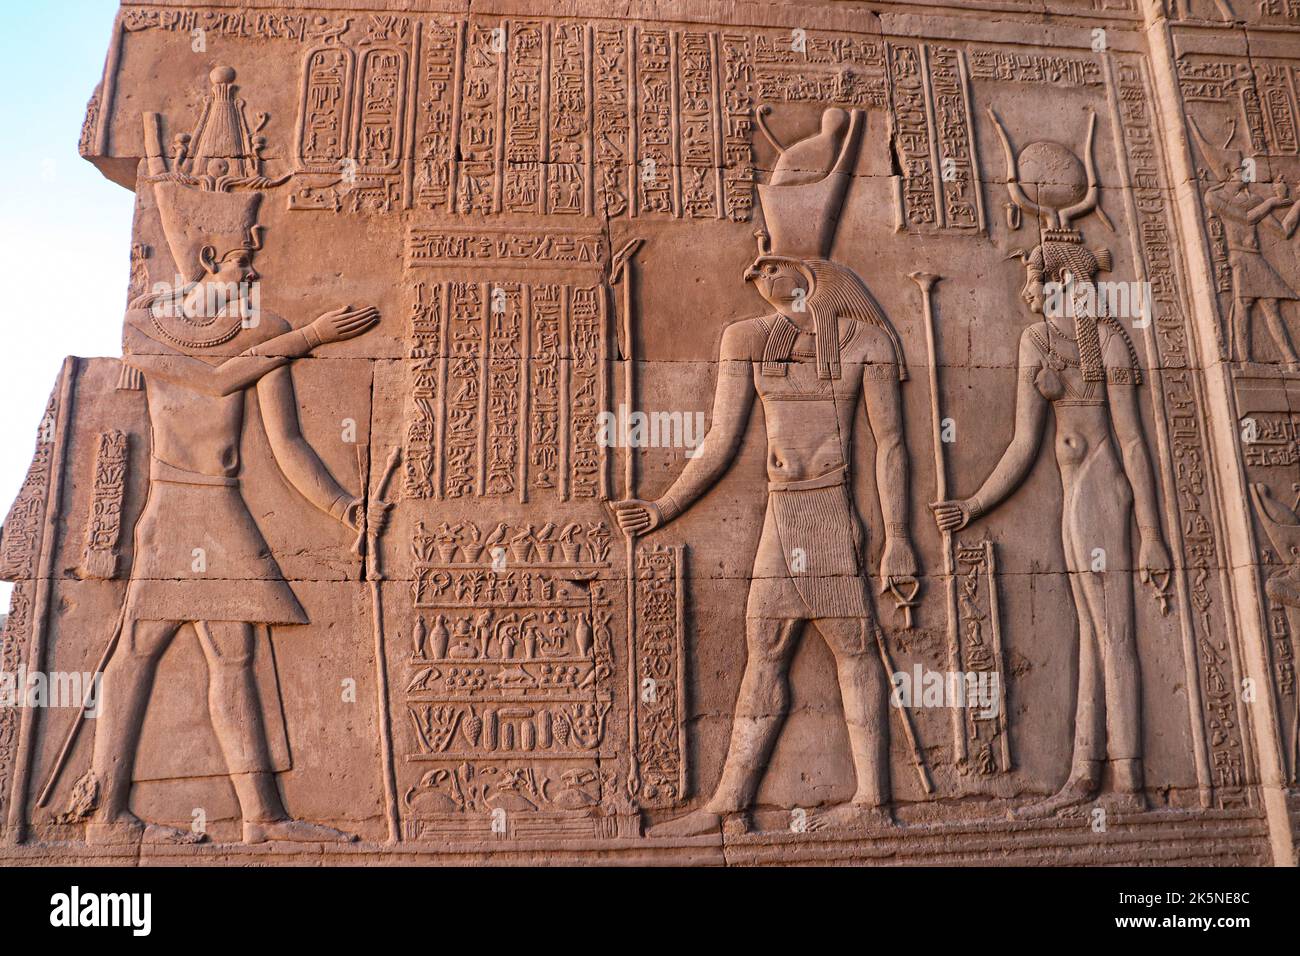 Figuras faraónicas y jeroglíficos tallados en las paredes del templo Kom Ombo Foto de stock